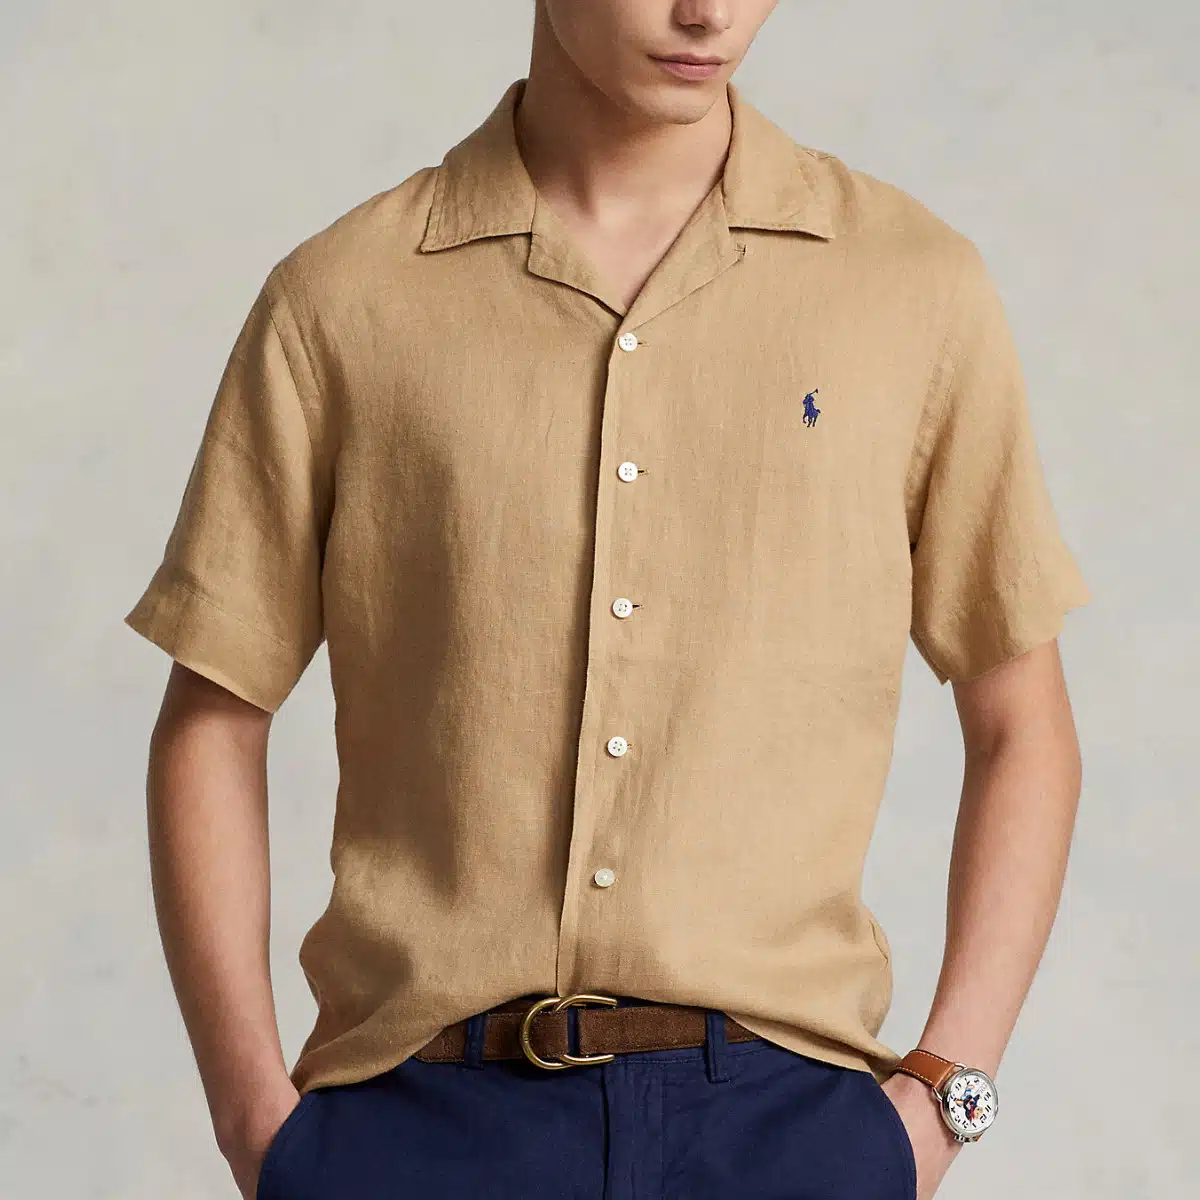 The 10 Best Linen Shirts for Summer - The Modest Man